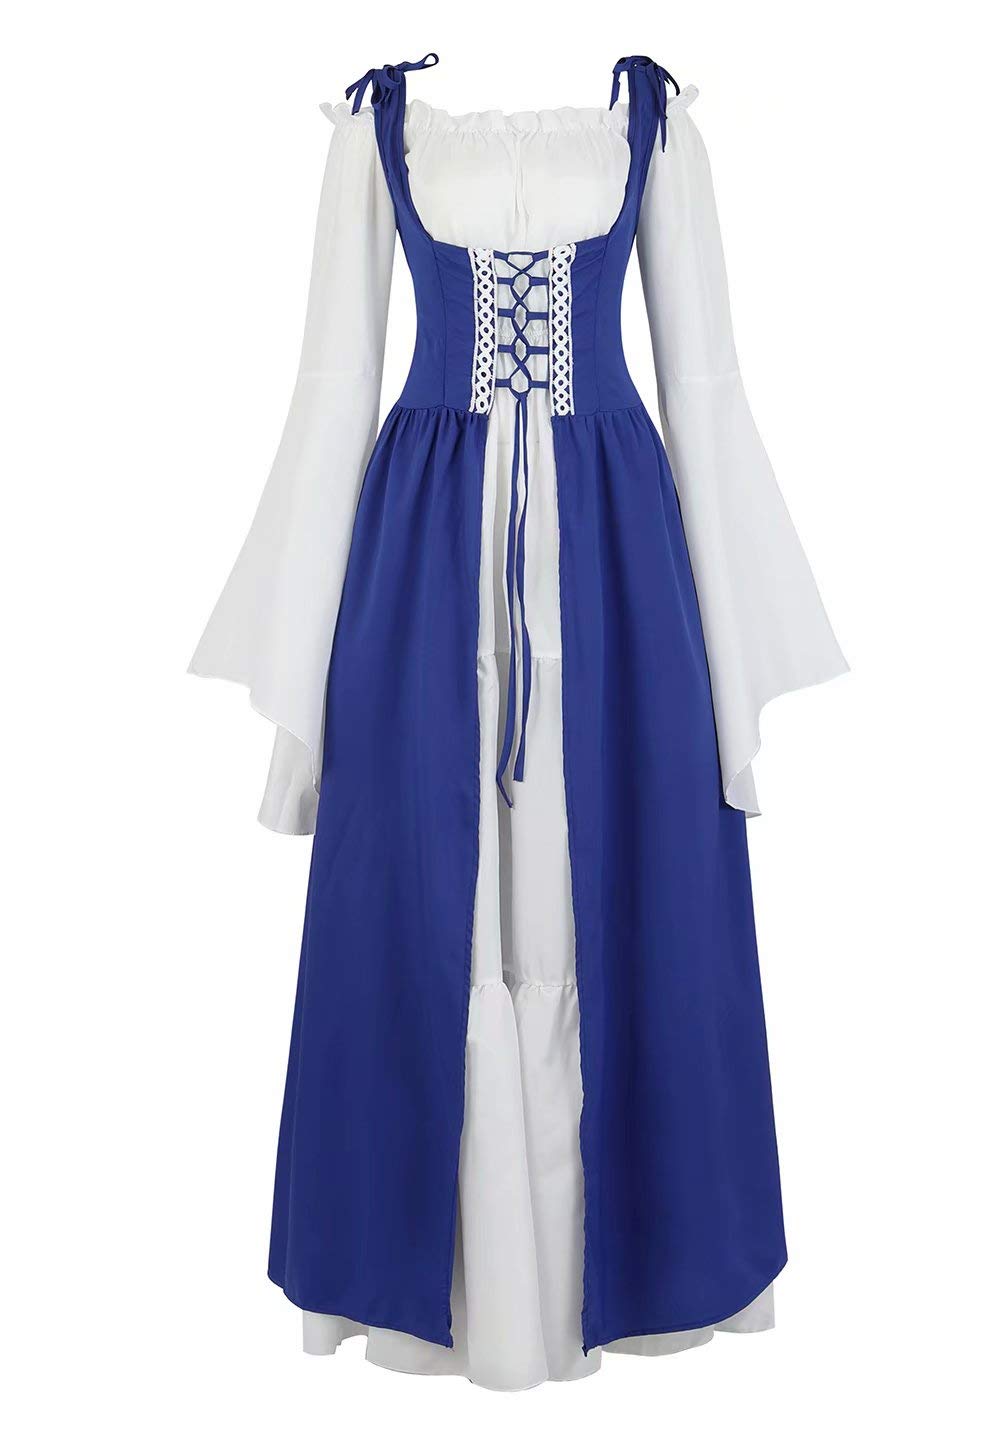 Josamogre Mittelalter Kleidung Damen Kleid renaissance mit Trompetenärmel Party Kostüm bodenlang Vintage Retro costume cosplay Blau L